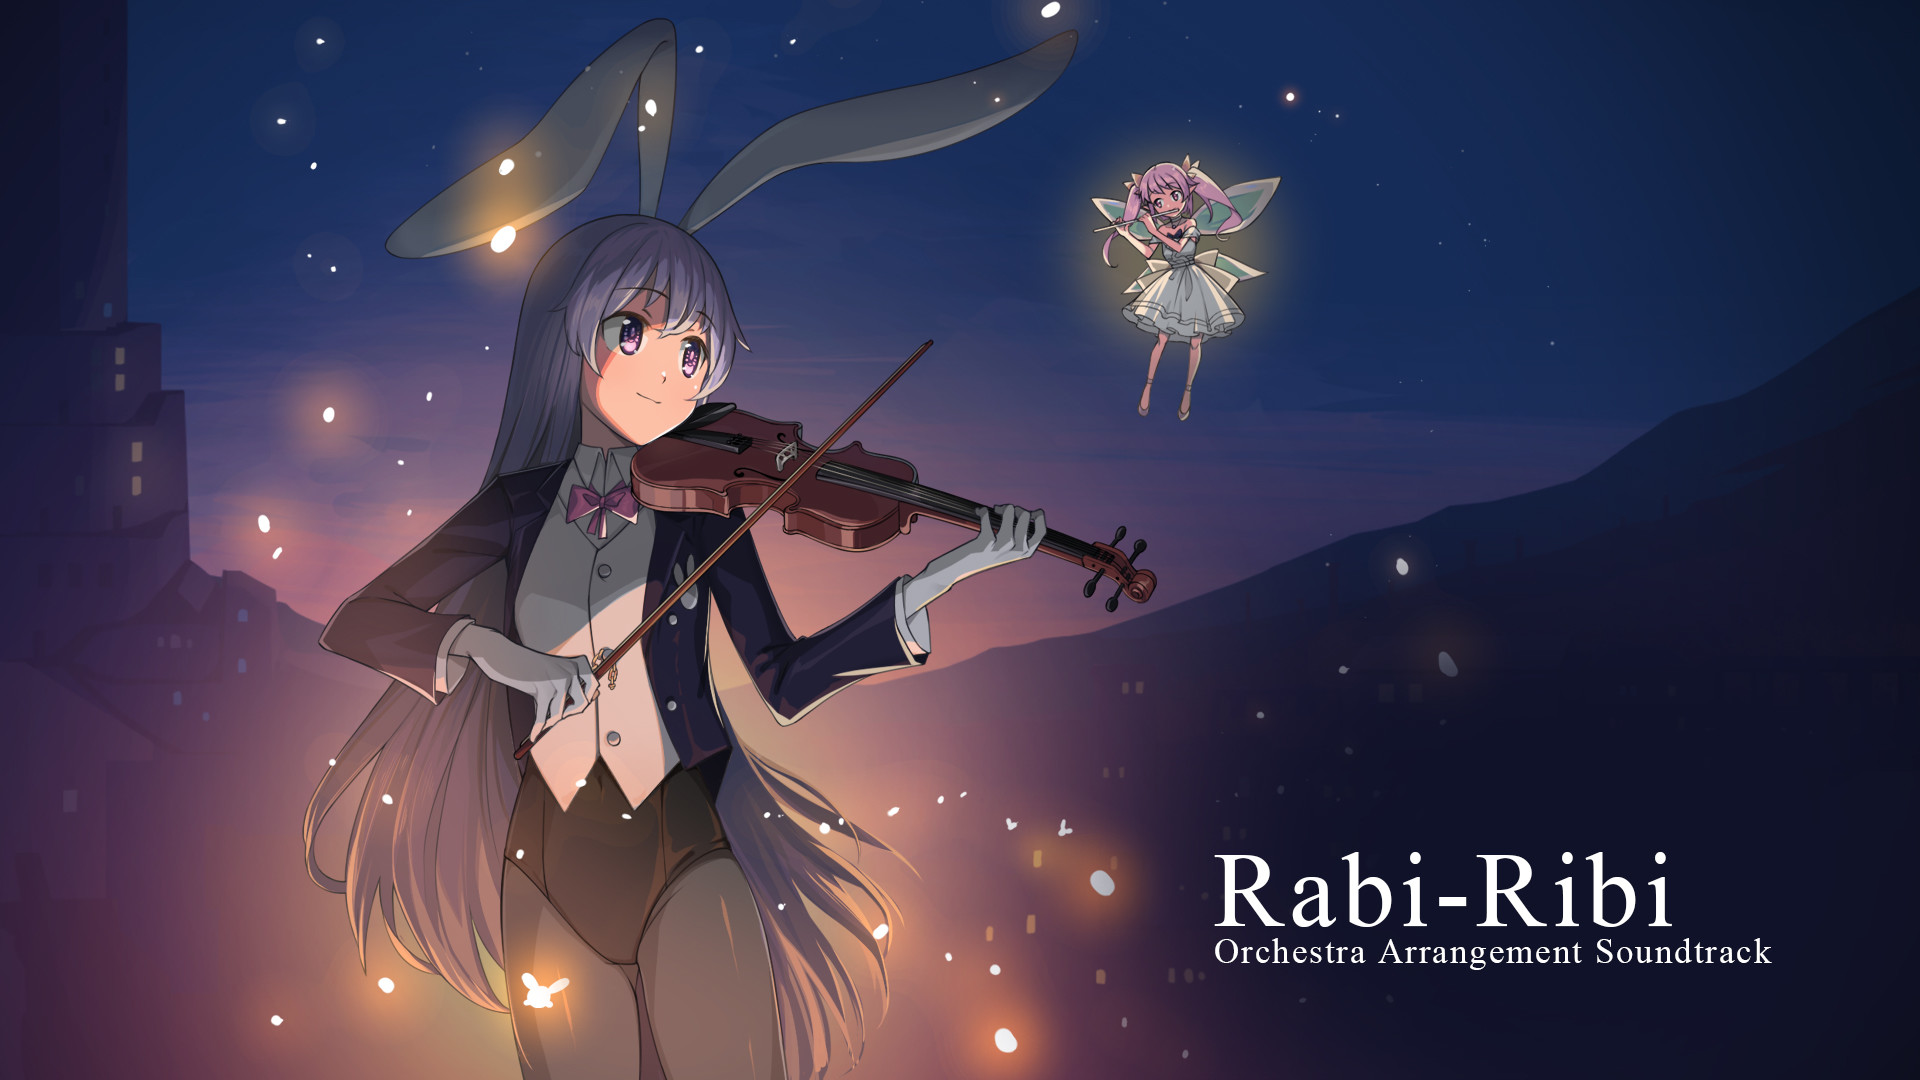 Rabi-Ribi - Orchestra Arrangement Soundtrack Featured Screenshot #1